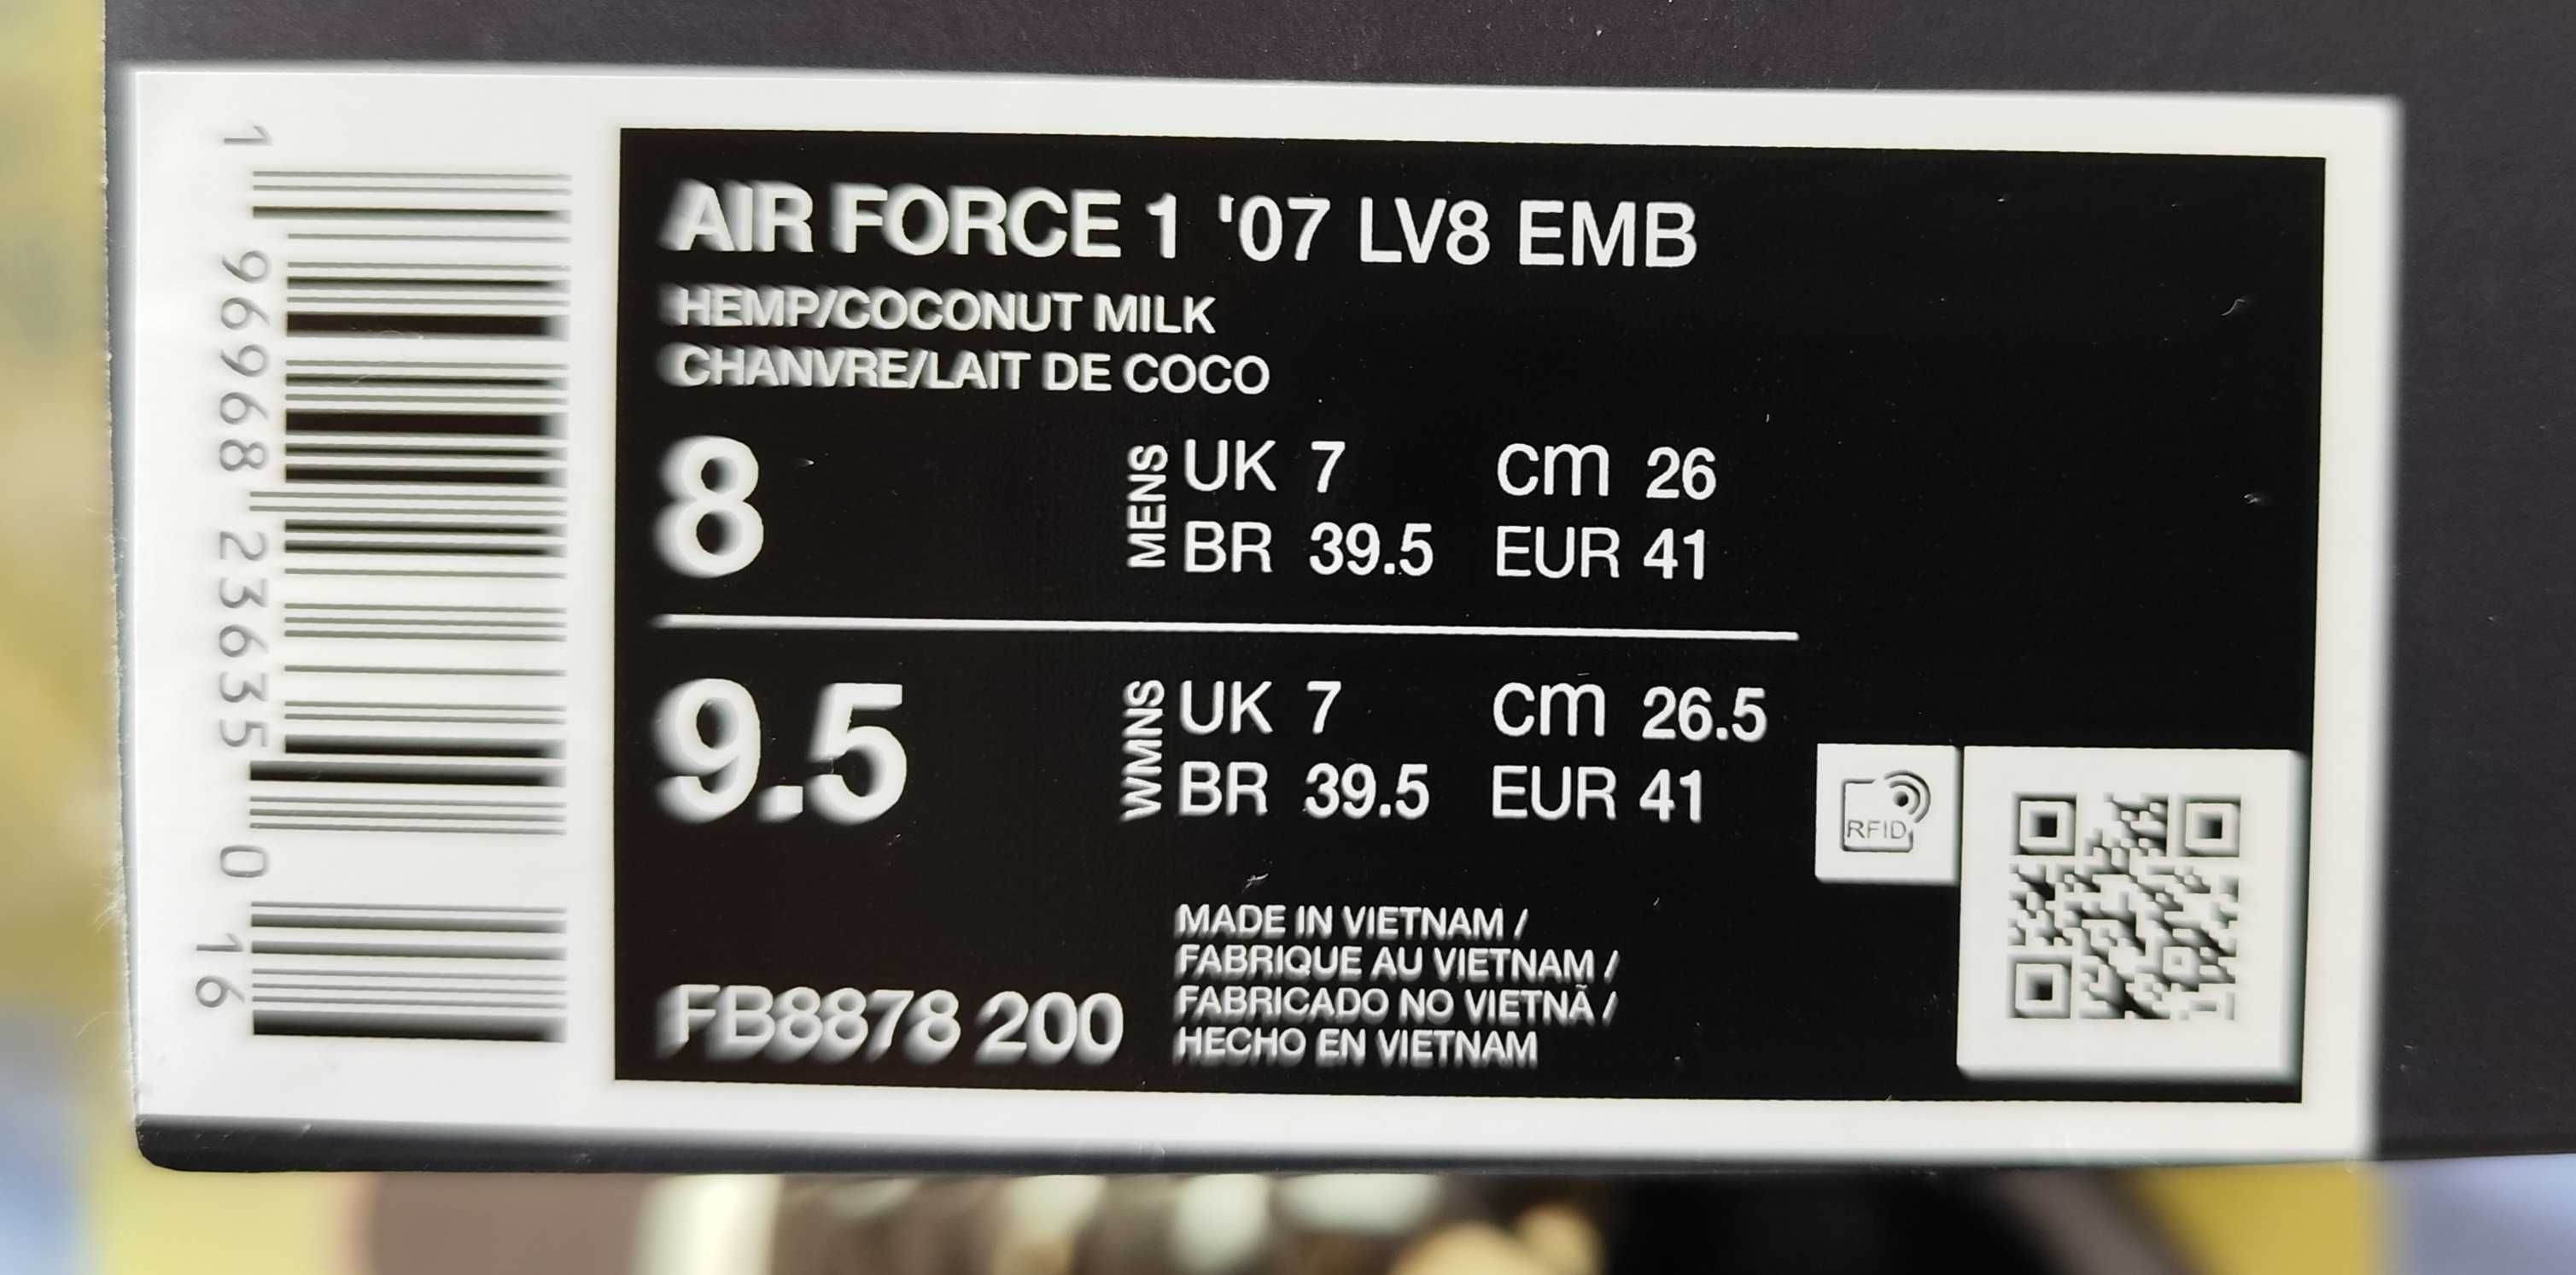 Nike Air Force 1 - '07 LV8 Hemp/Coconut Milk tamanho 41